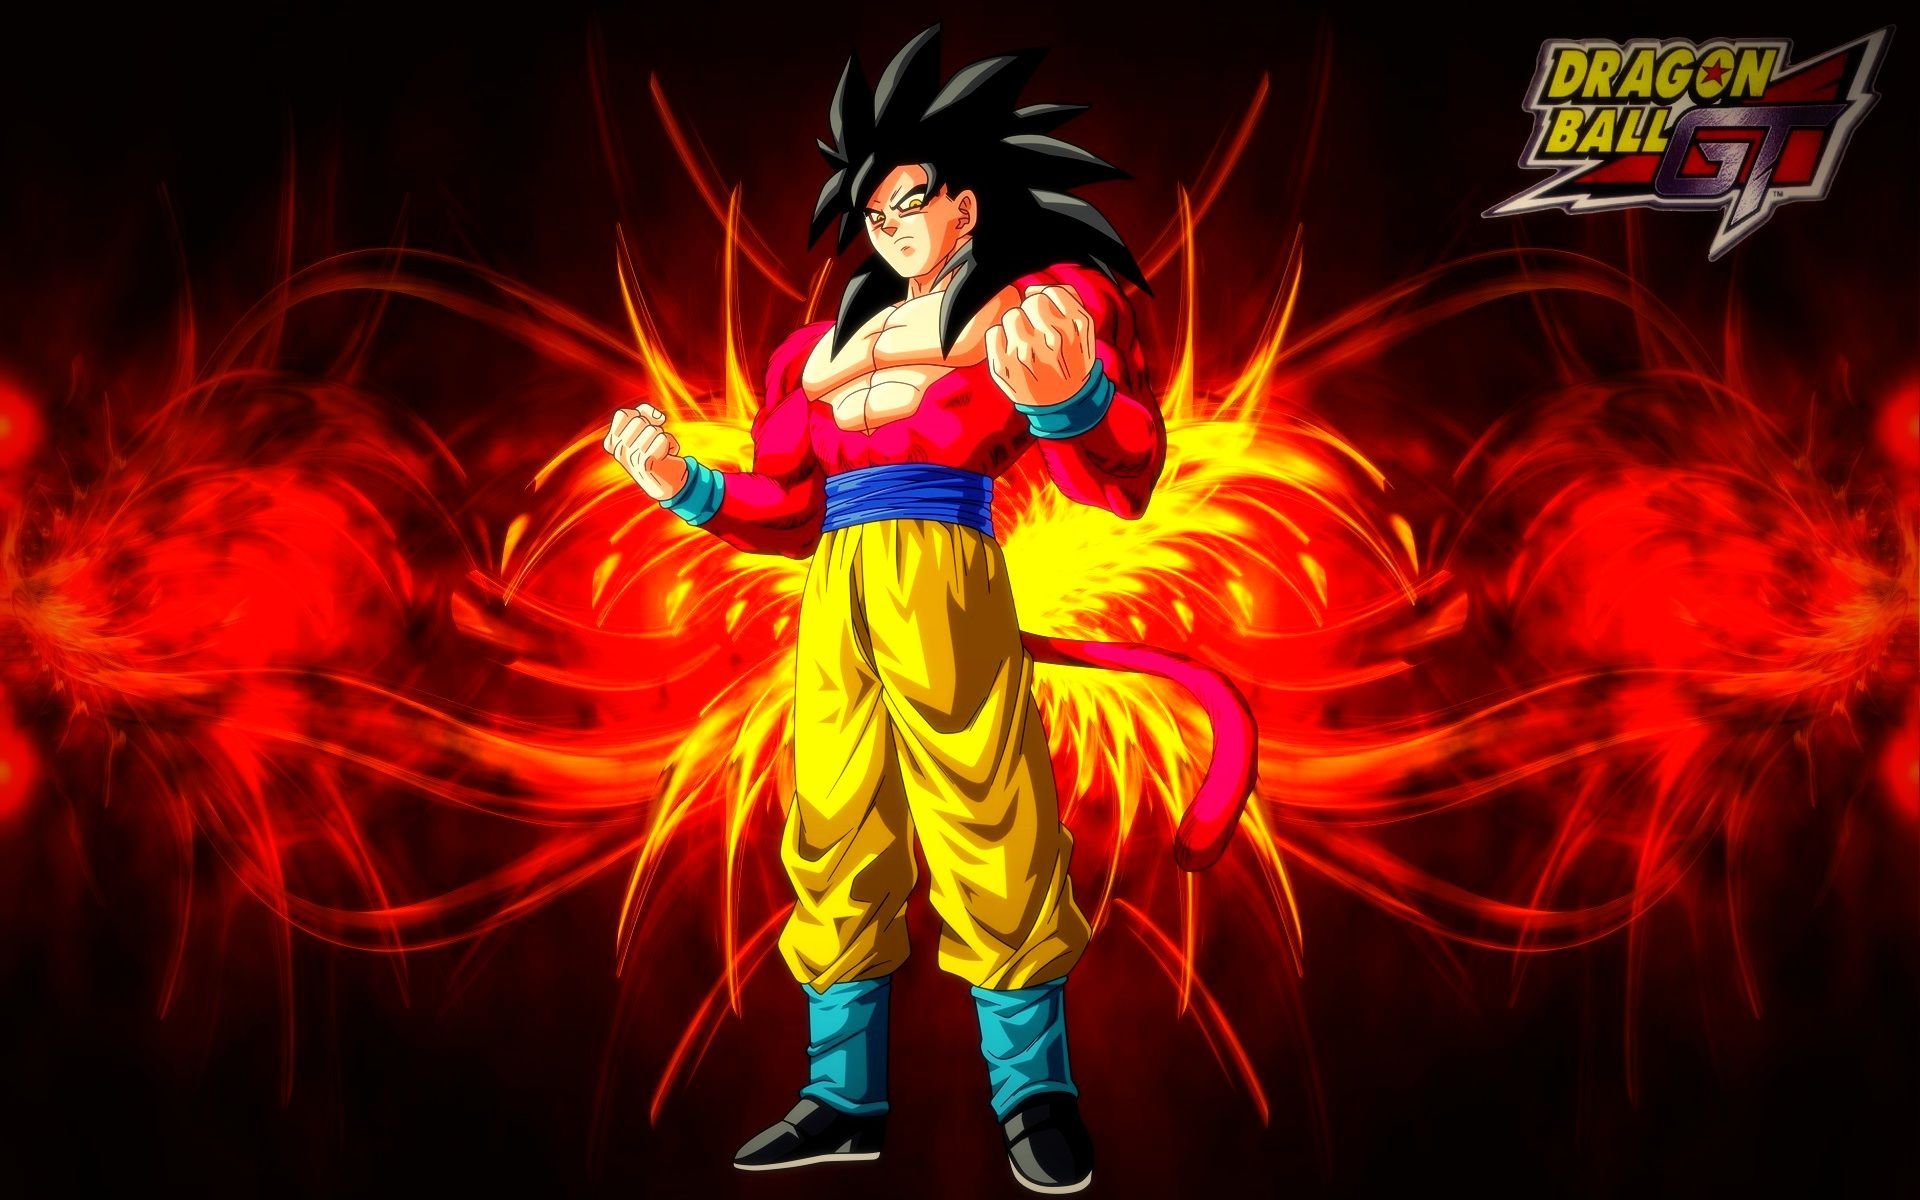 Goku Super Saiyan 4 HD Wallpaper